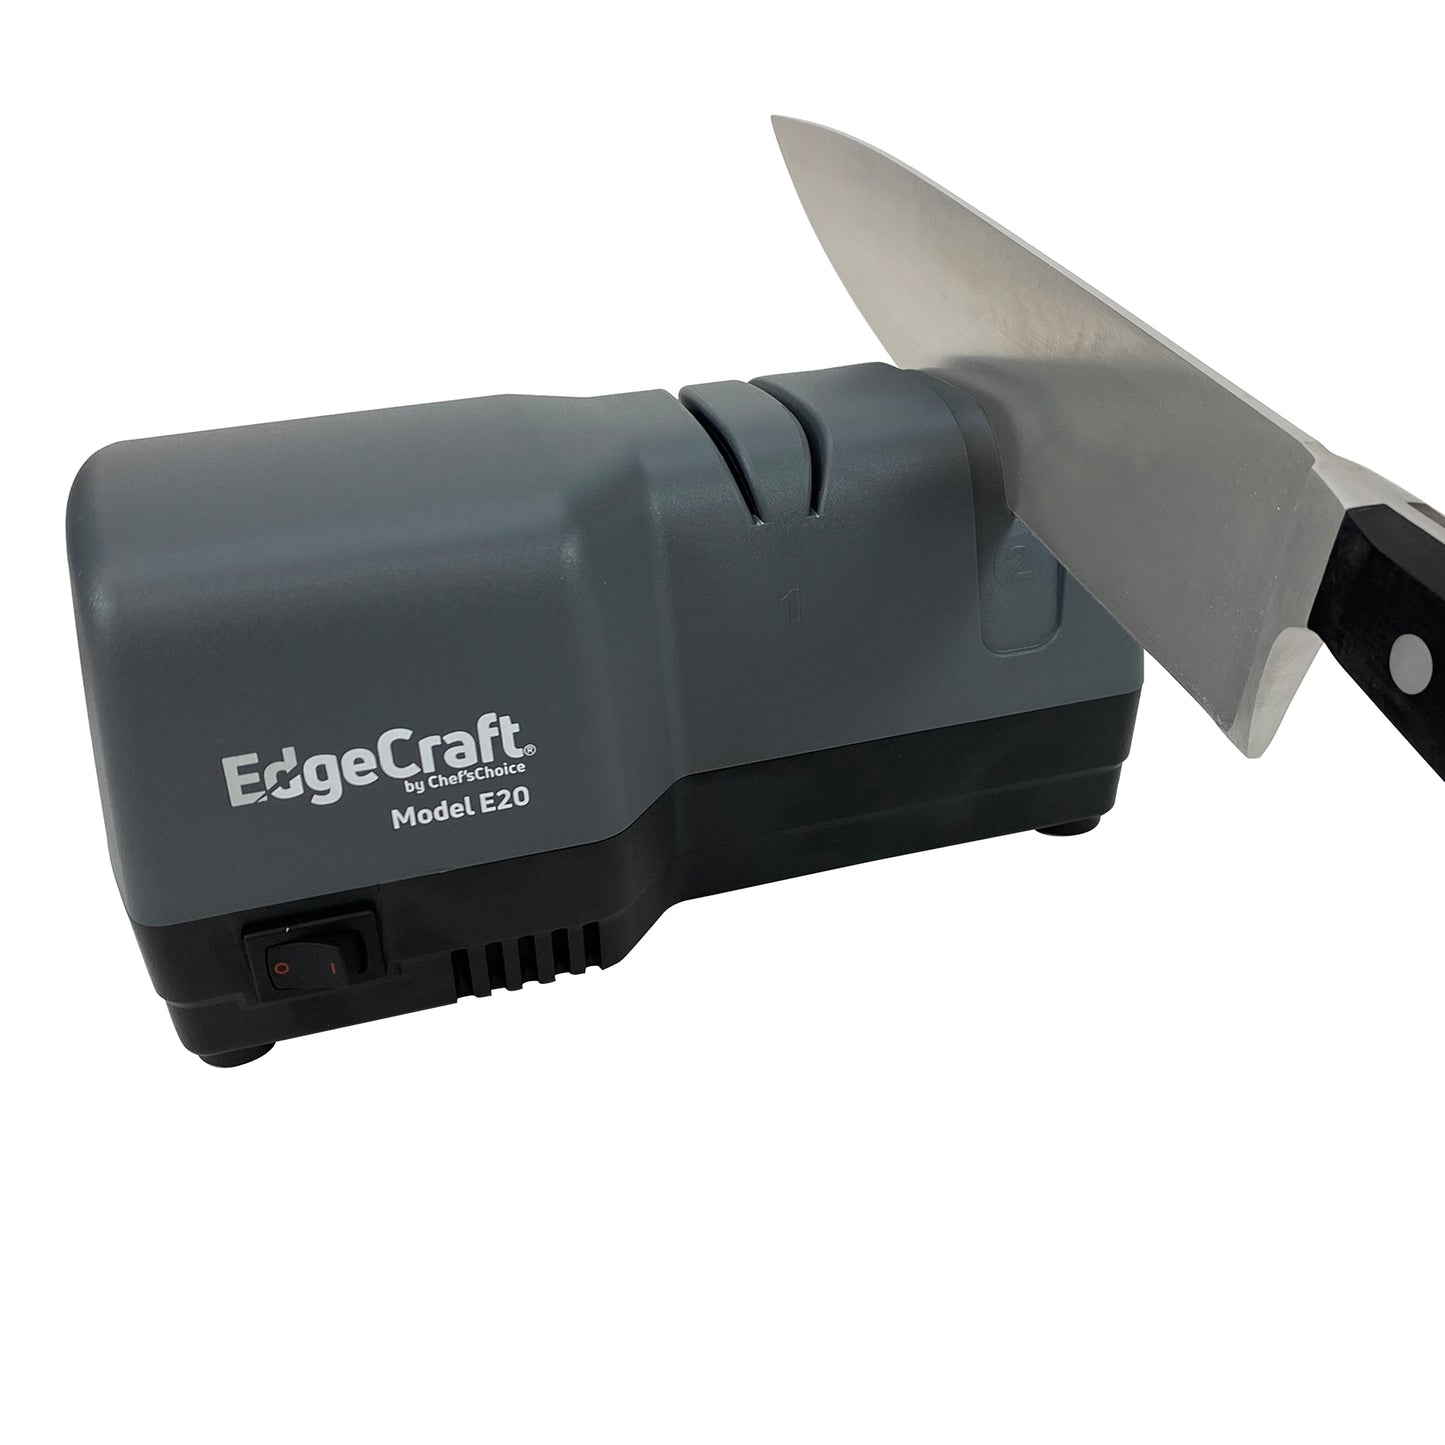 Chef'sChoice CC220 Hybrid knife sharpening machine